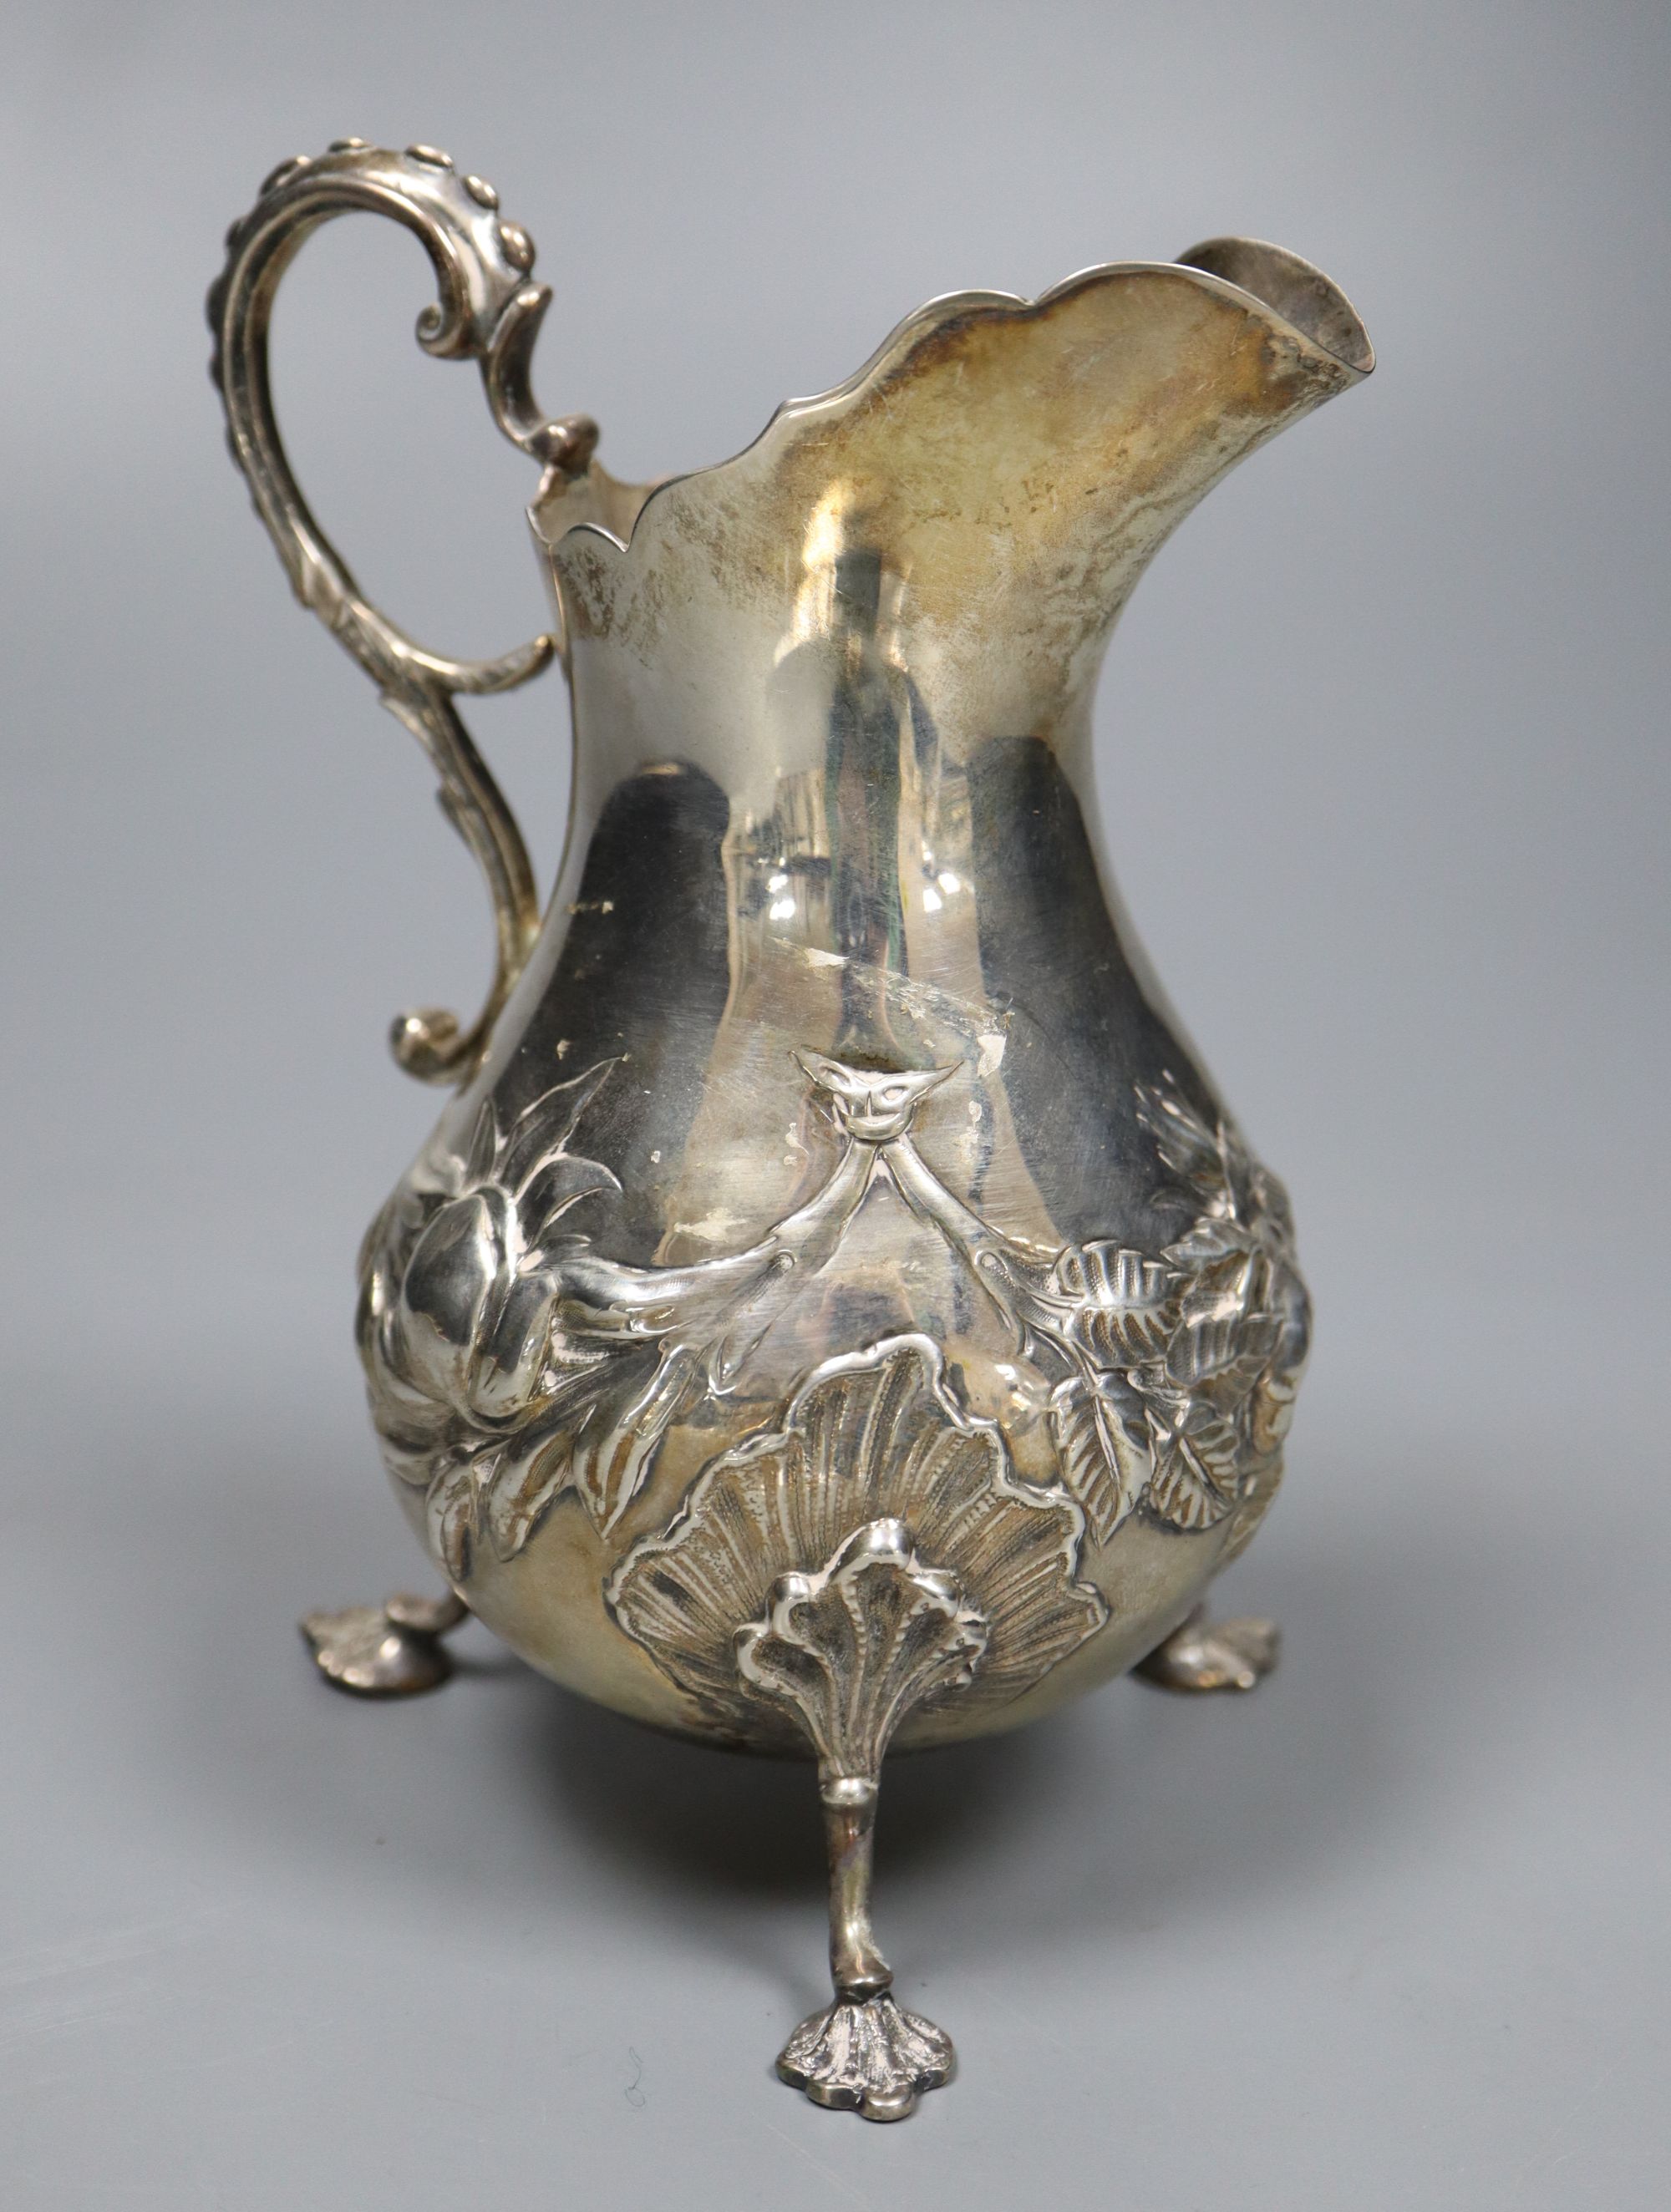 A William IV silver baluster cream jug, Charles Fox II, London, 1830, 14.5cm, 6.5oz.